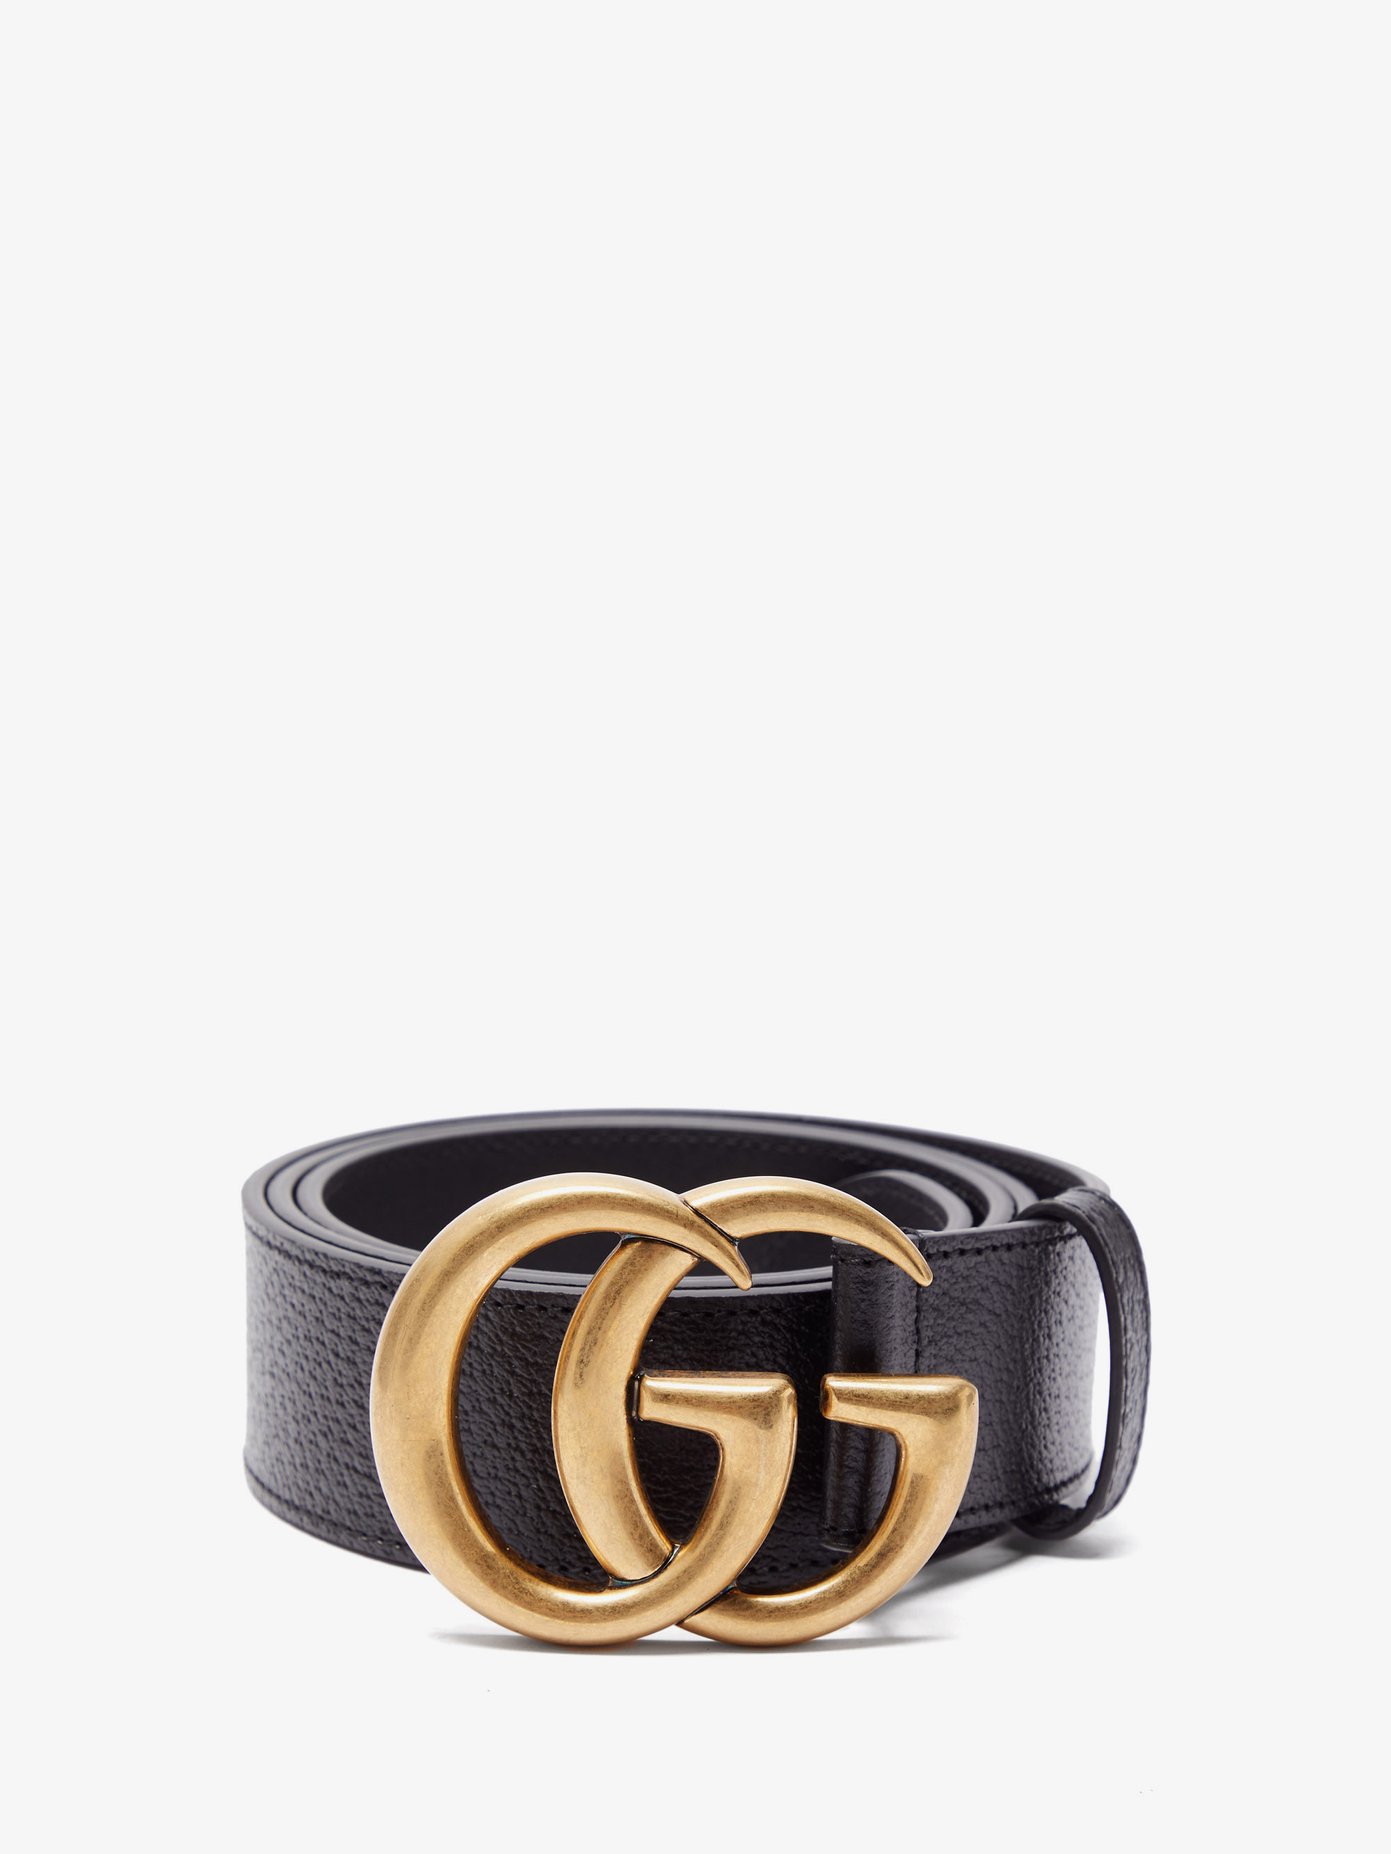 buy gg belt